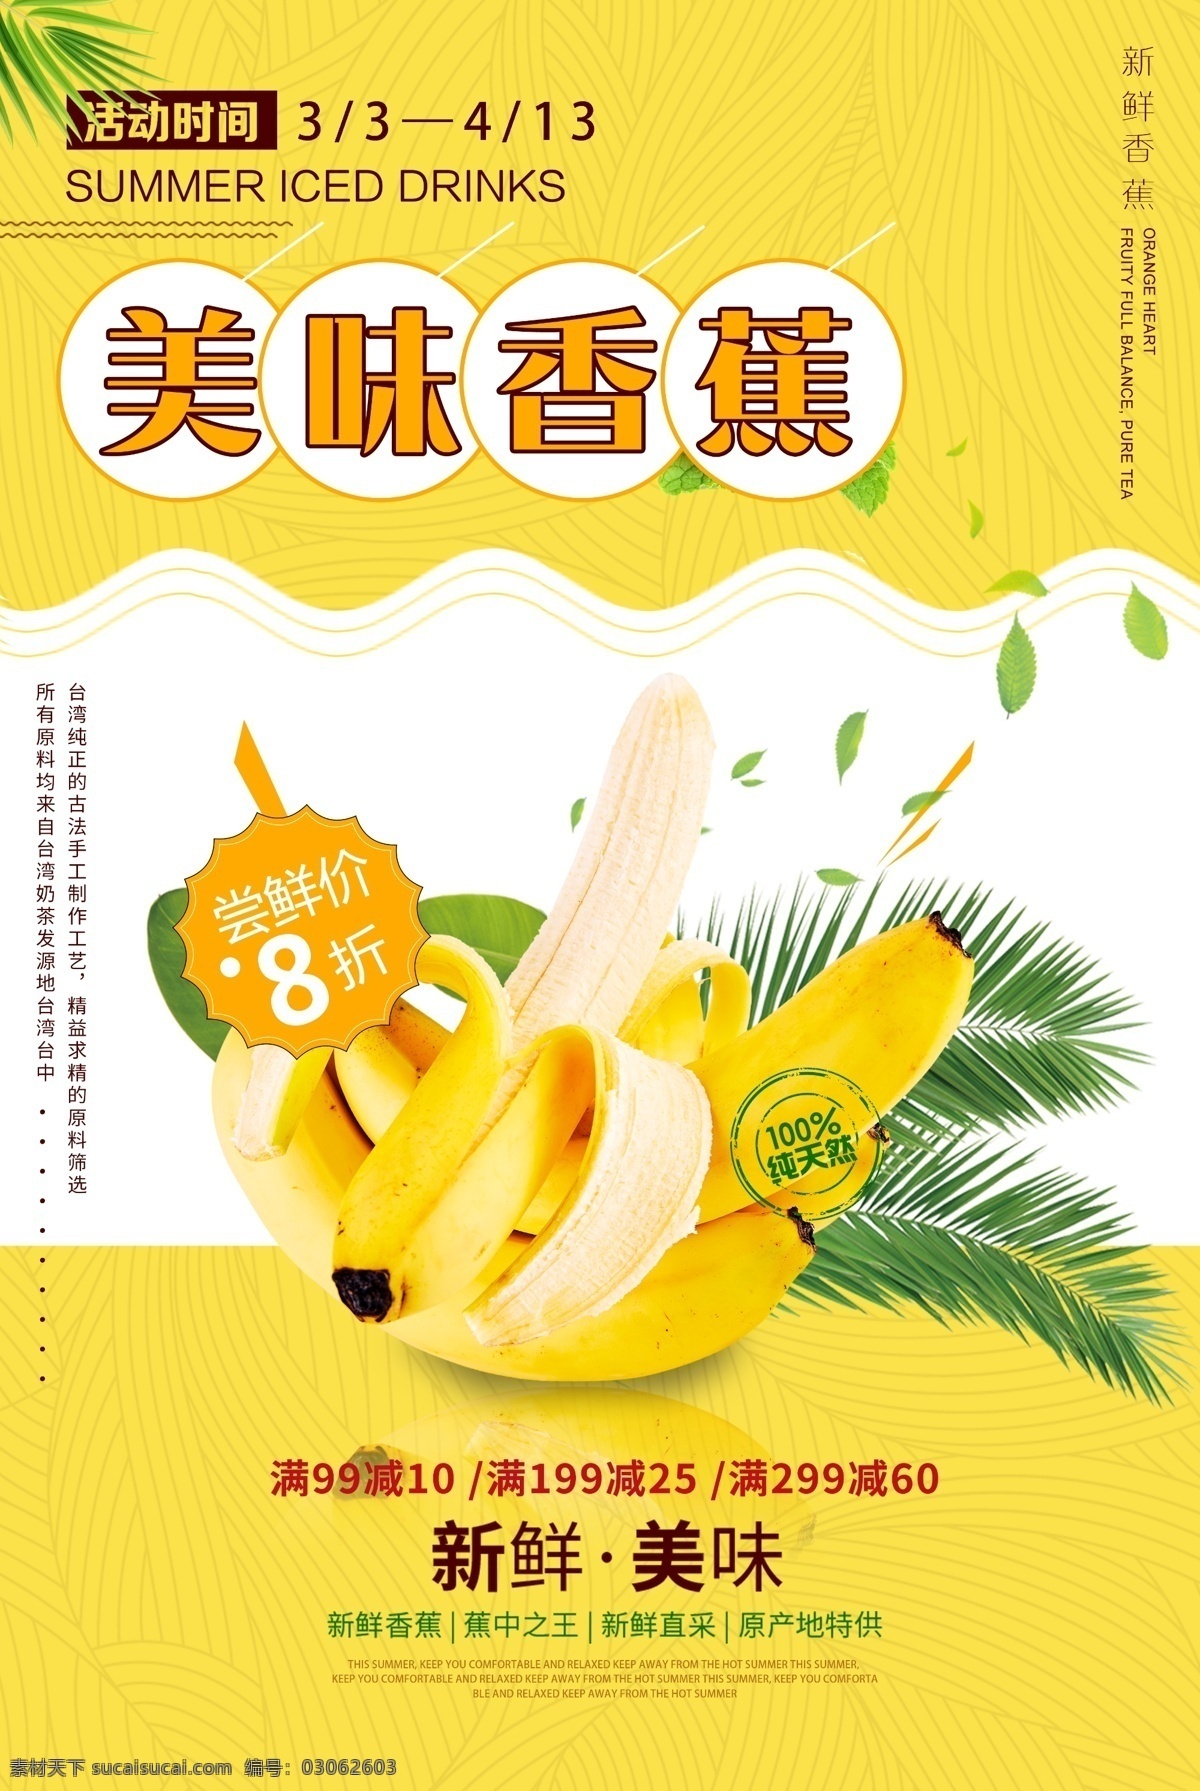 新鲜 香蕉 打折 促销 海报 上新 进货 美食 活动优惠 水果海报 水果 果蔬 新鲜香蕉 新鲜水果 新鲜批发 天然 可口 促销食物